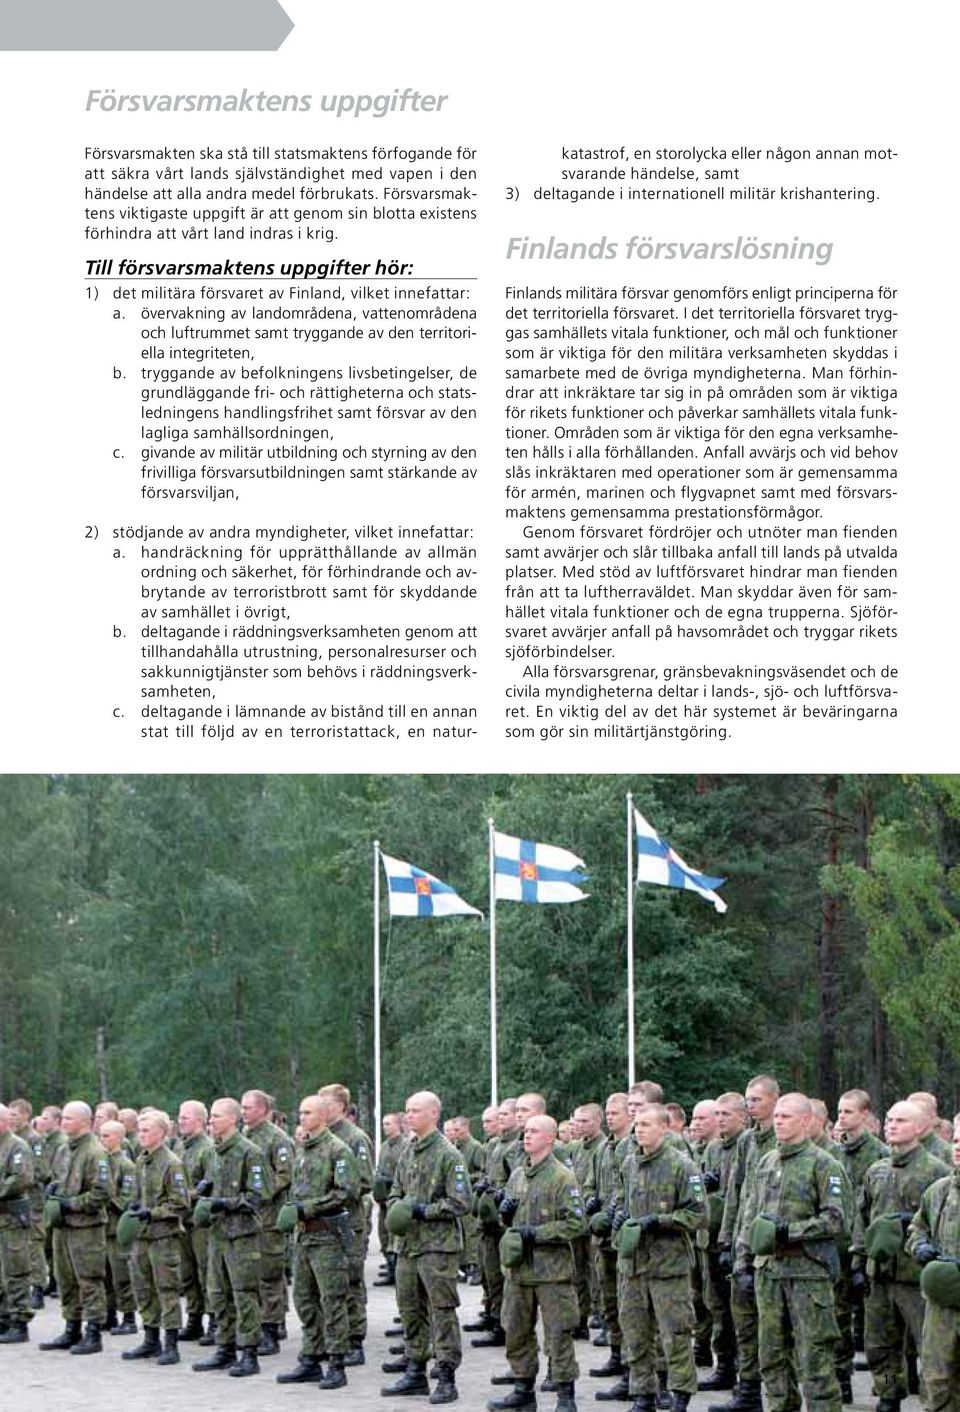 Till försvarsmaktens uppgifter hör: 1) det militära försvaret av Finland, vilket innefattar: a.